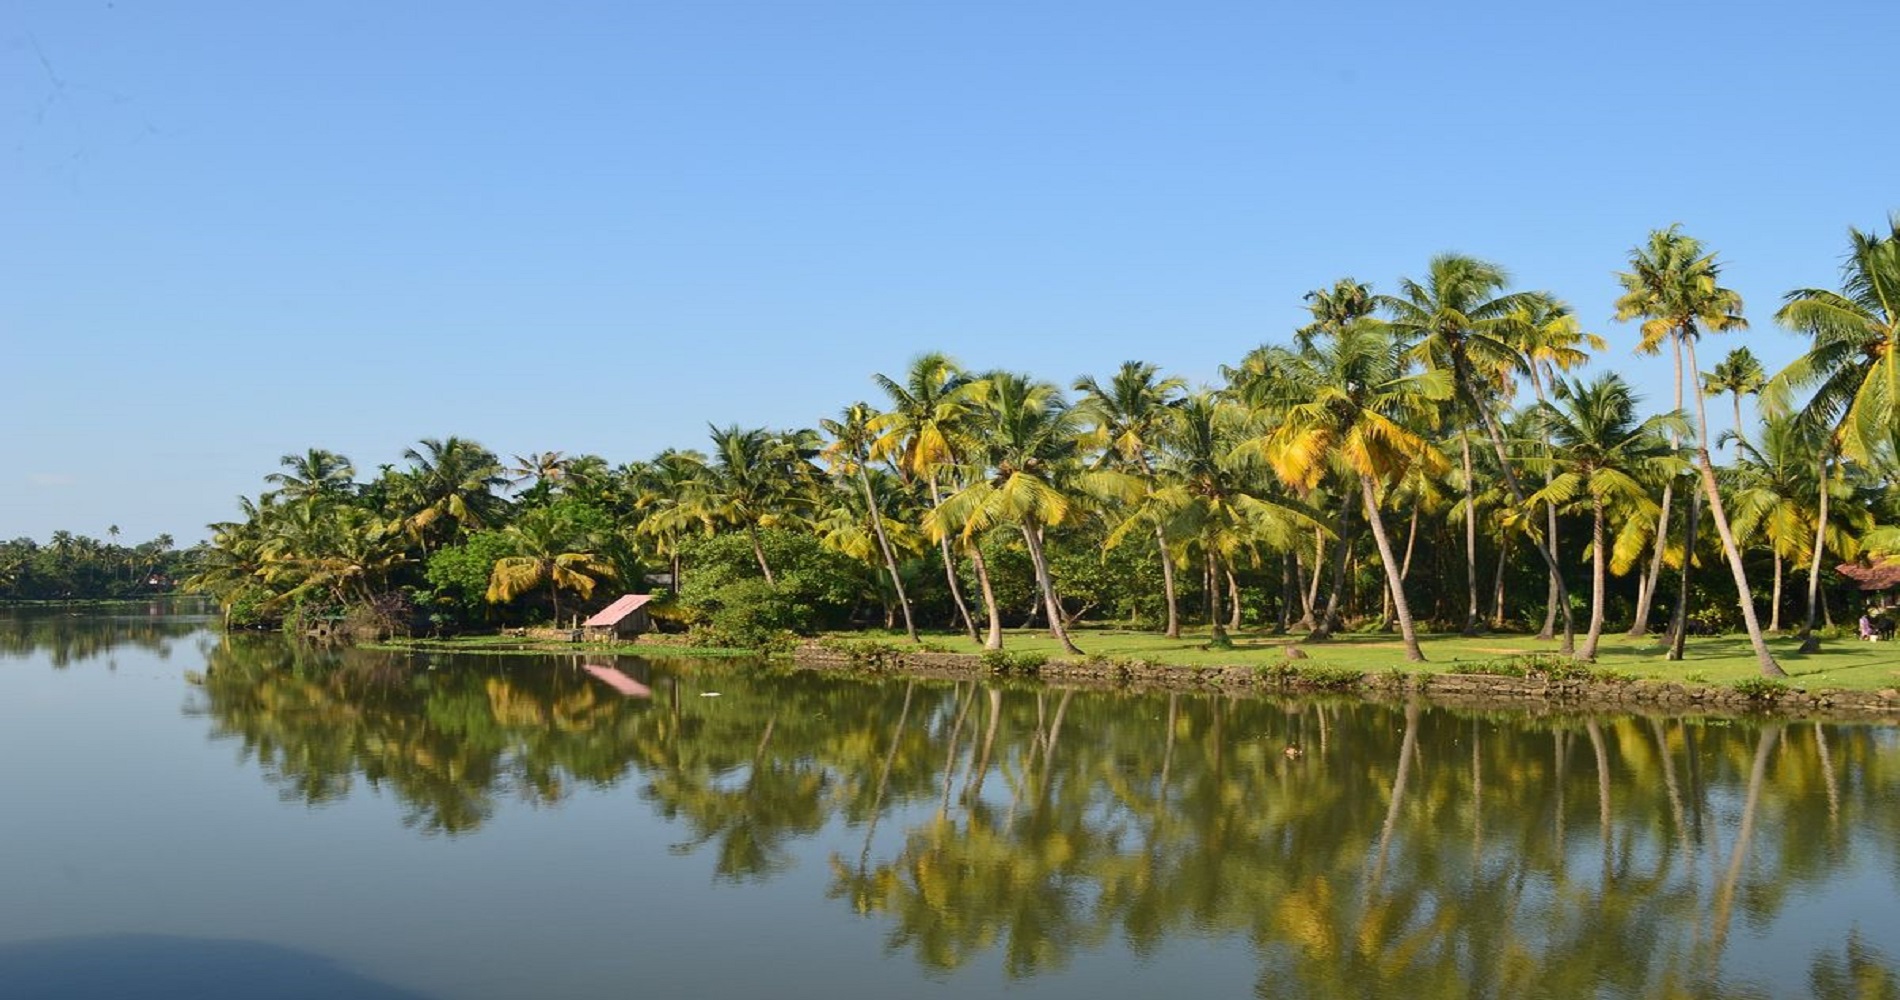 Background Image - India - Kerala